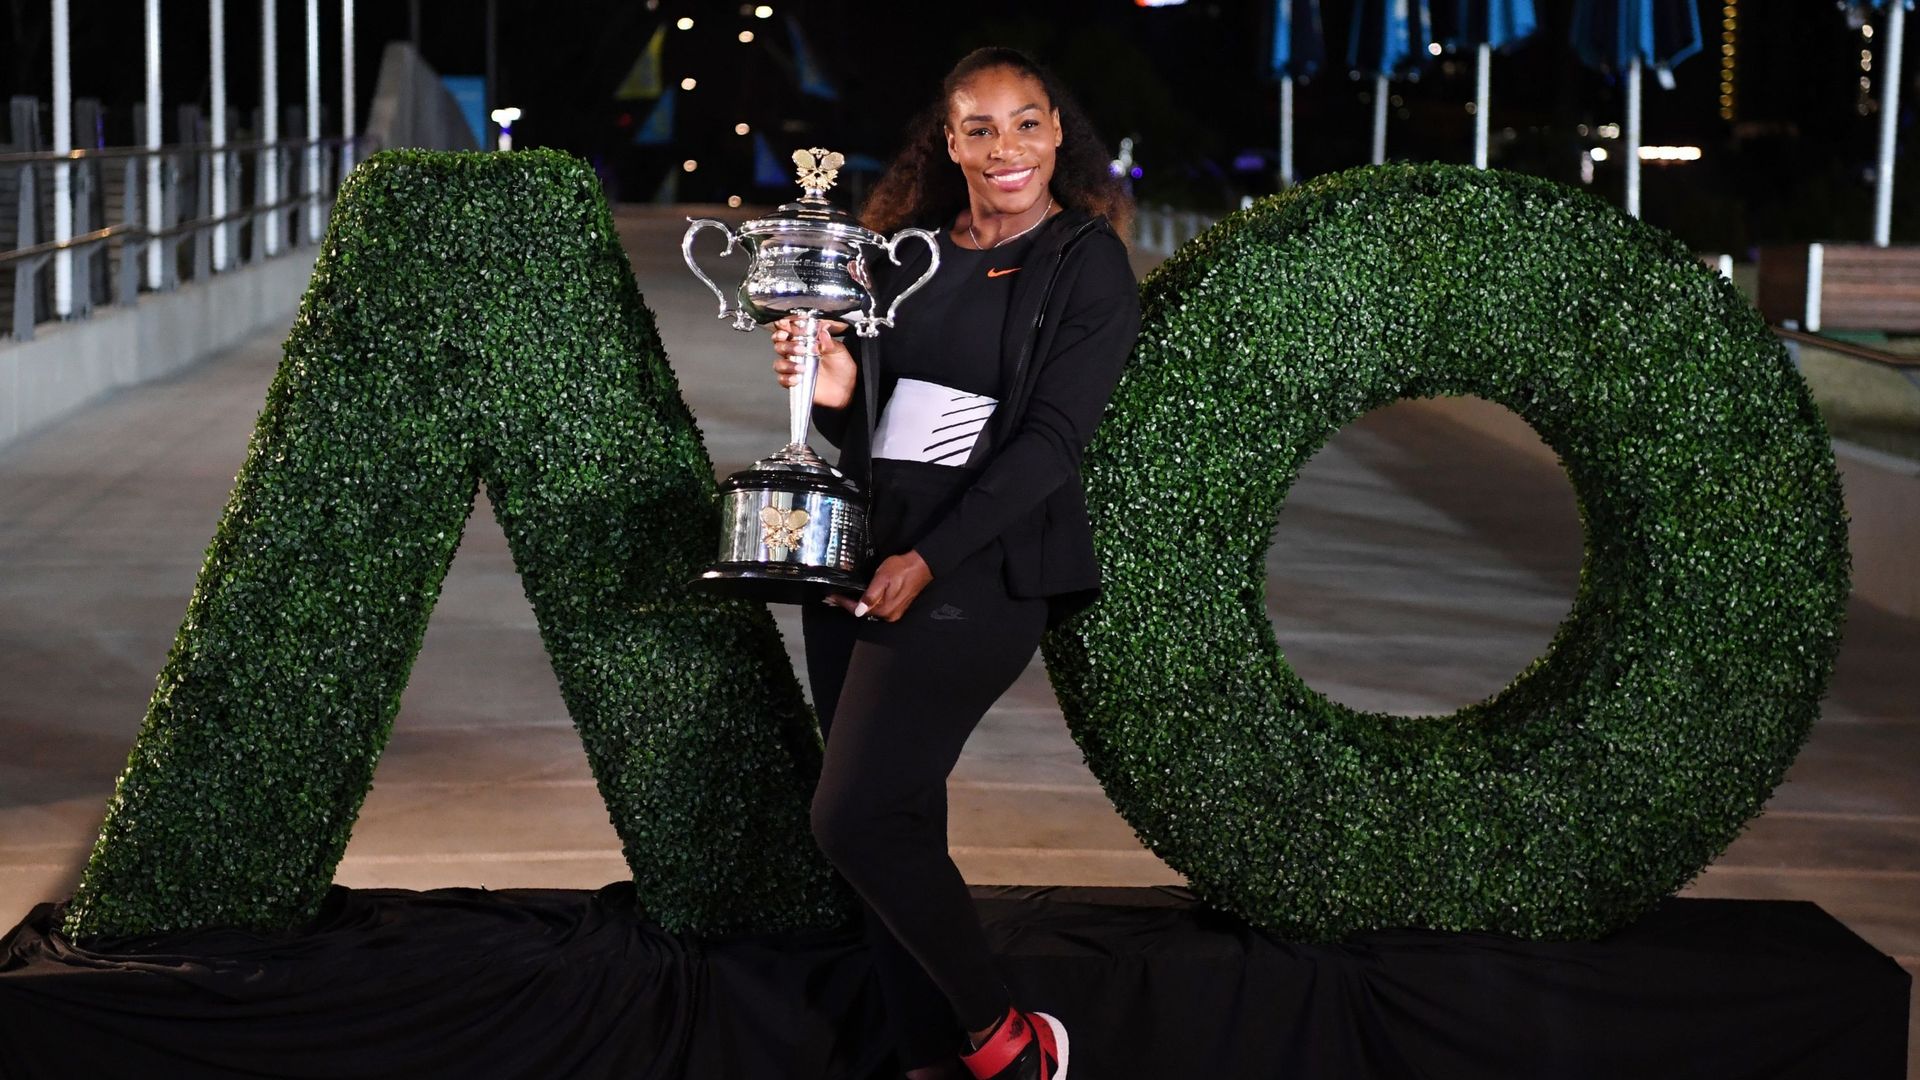 Personne ne le savait, mais Serena Williams était enceinte quand elle a gagné les Internationaux d'Australie